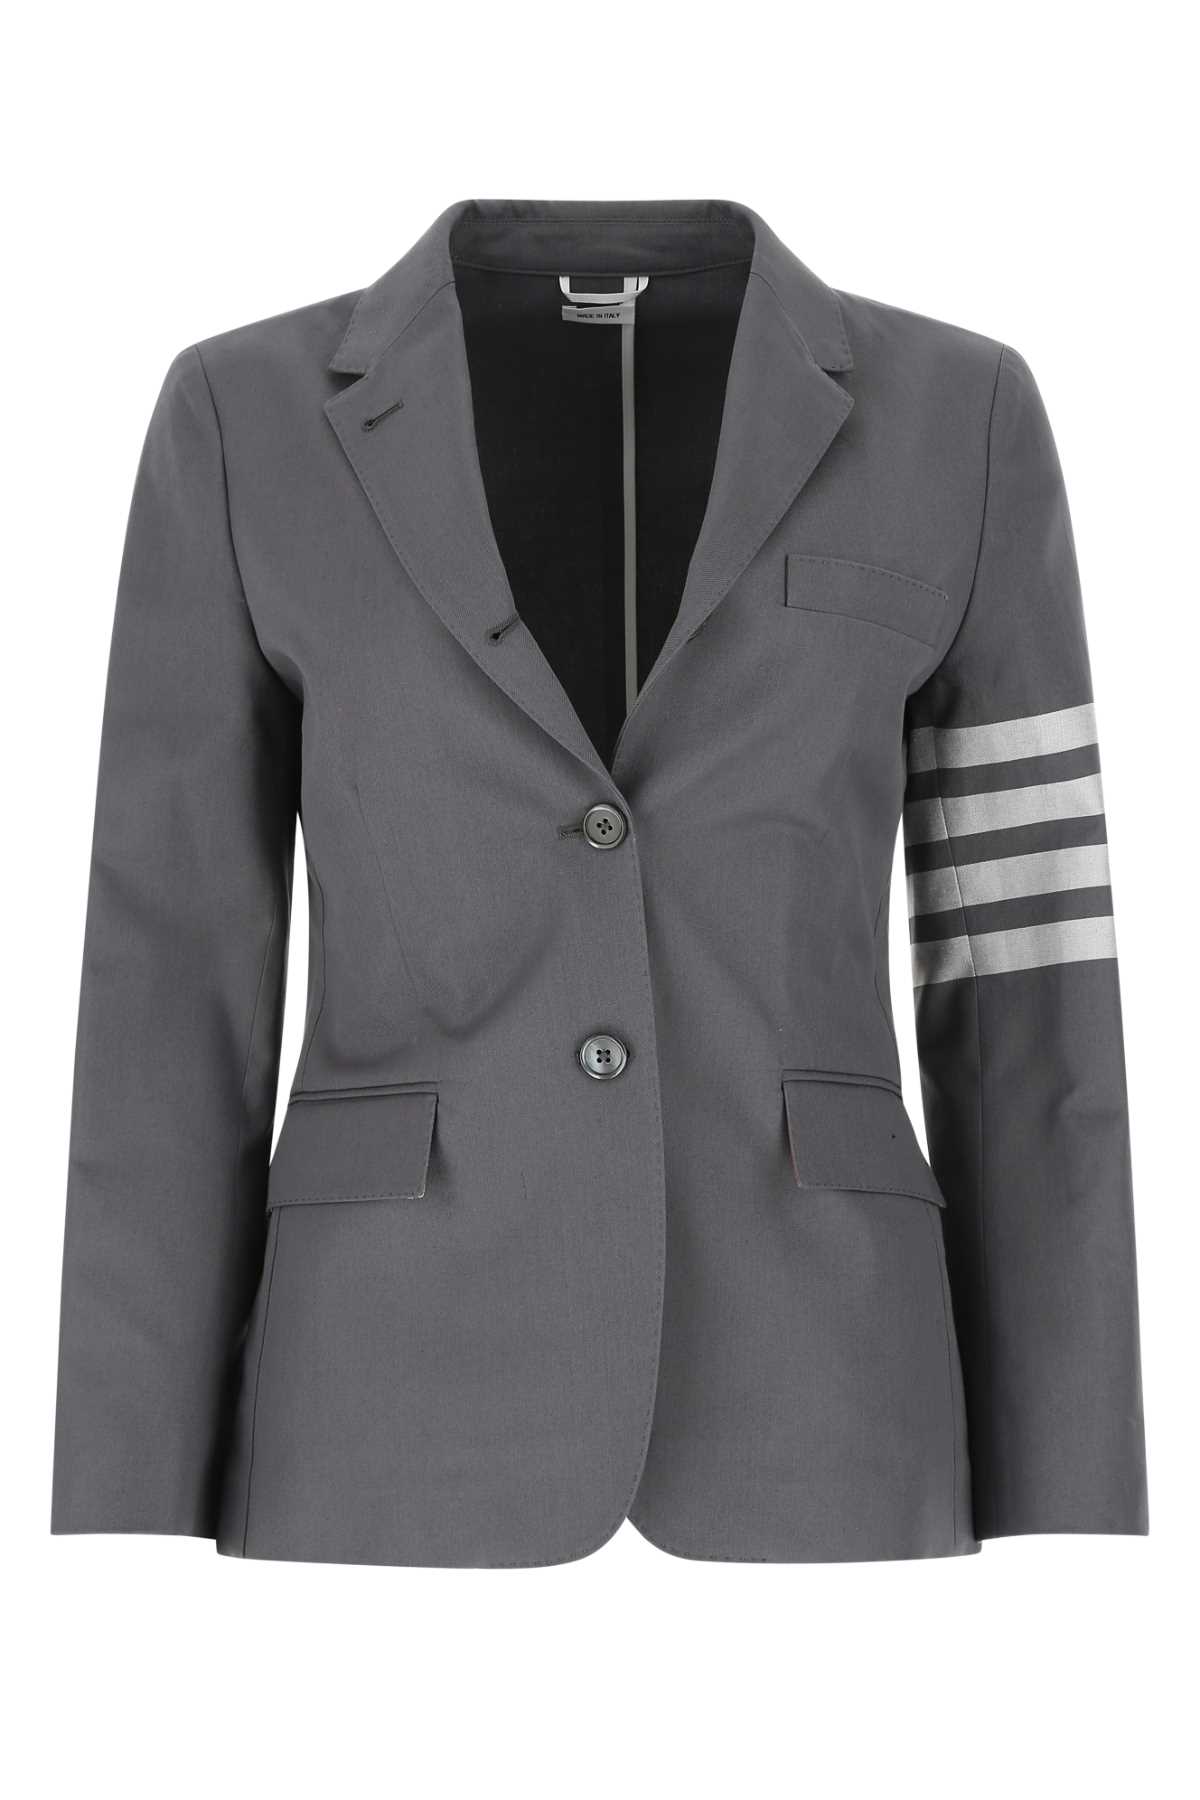 Vestes Pour Femme - Thom Browne - En Cotton Multicolor - Taille:  -